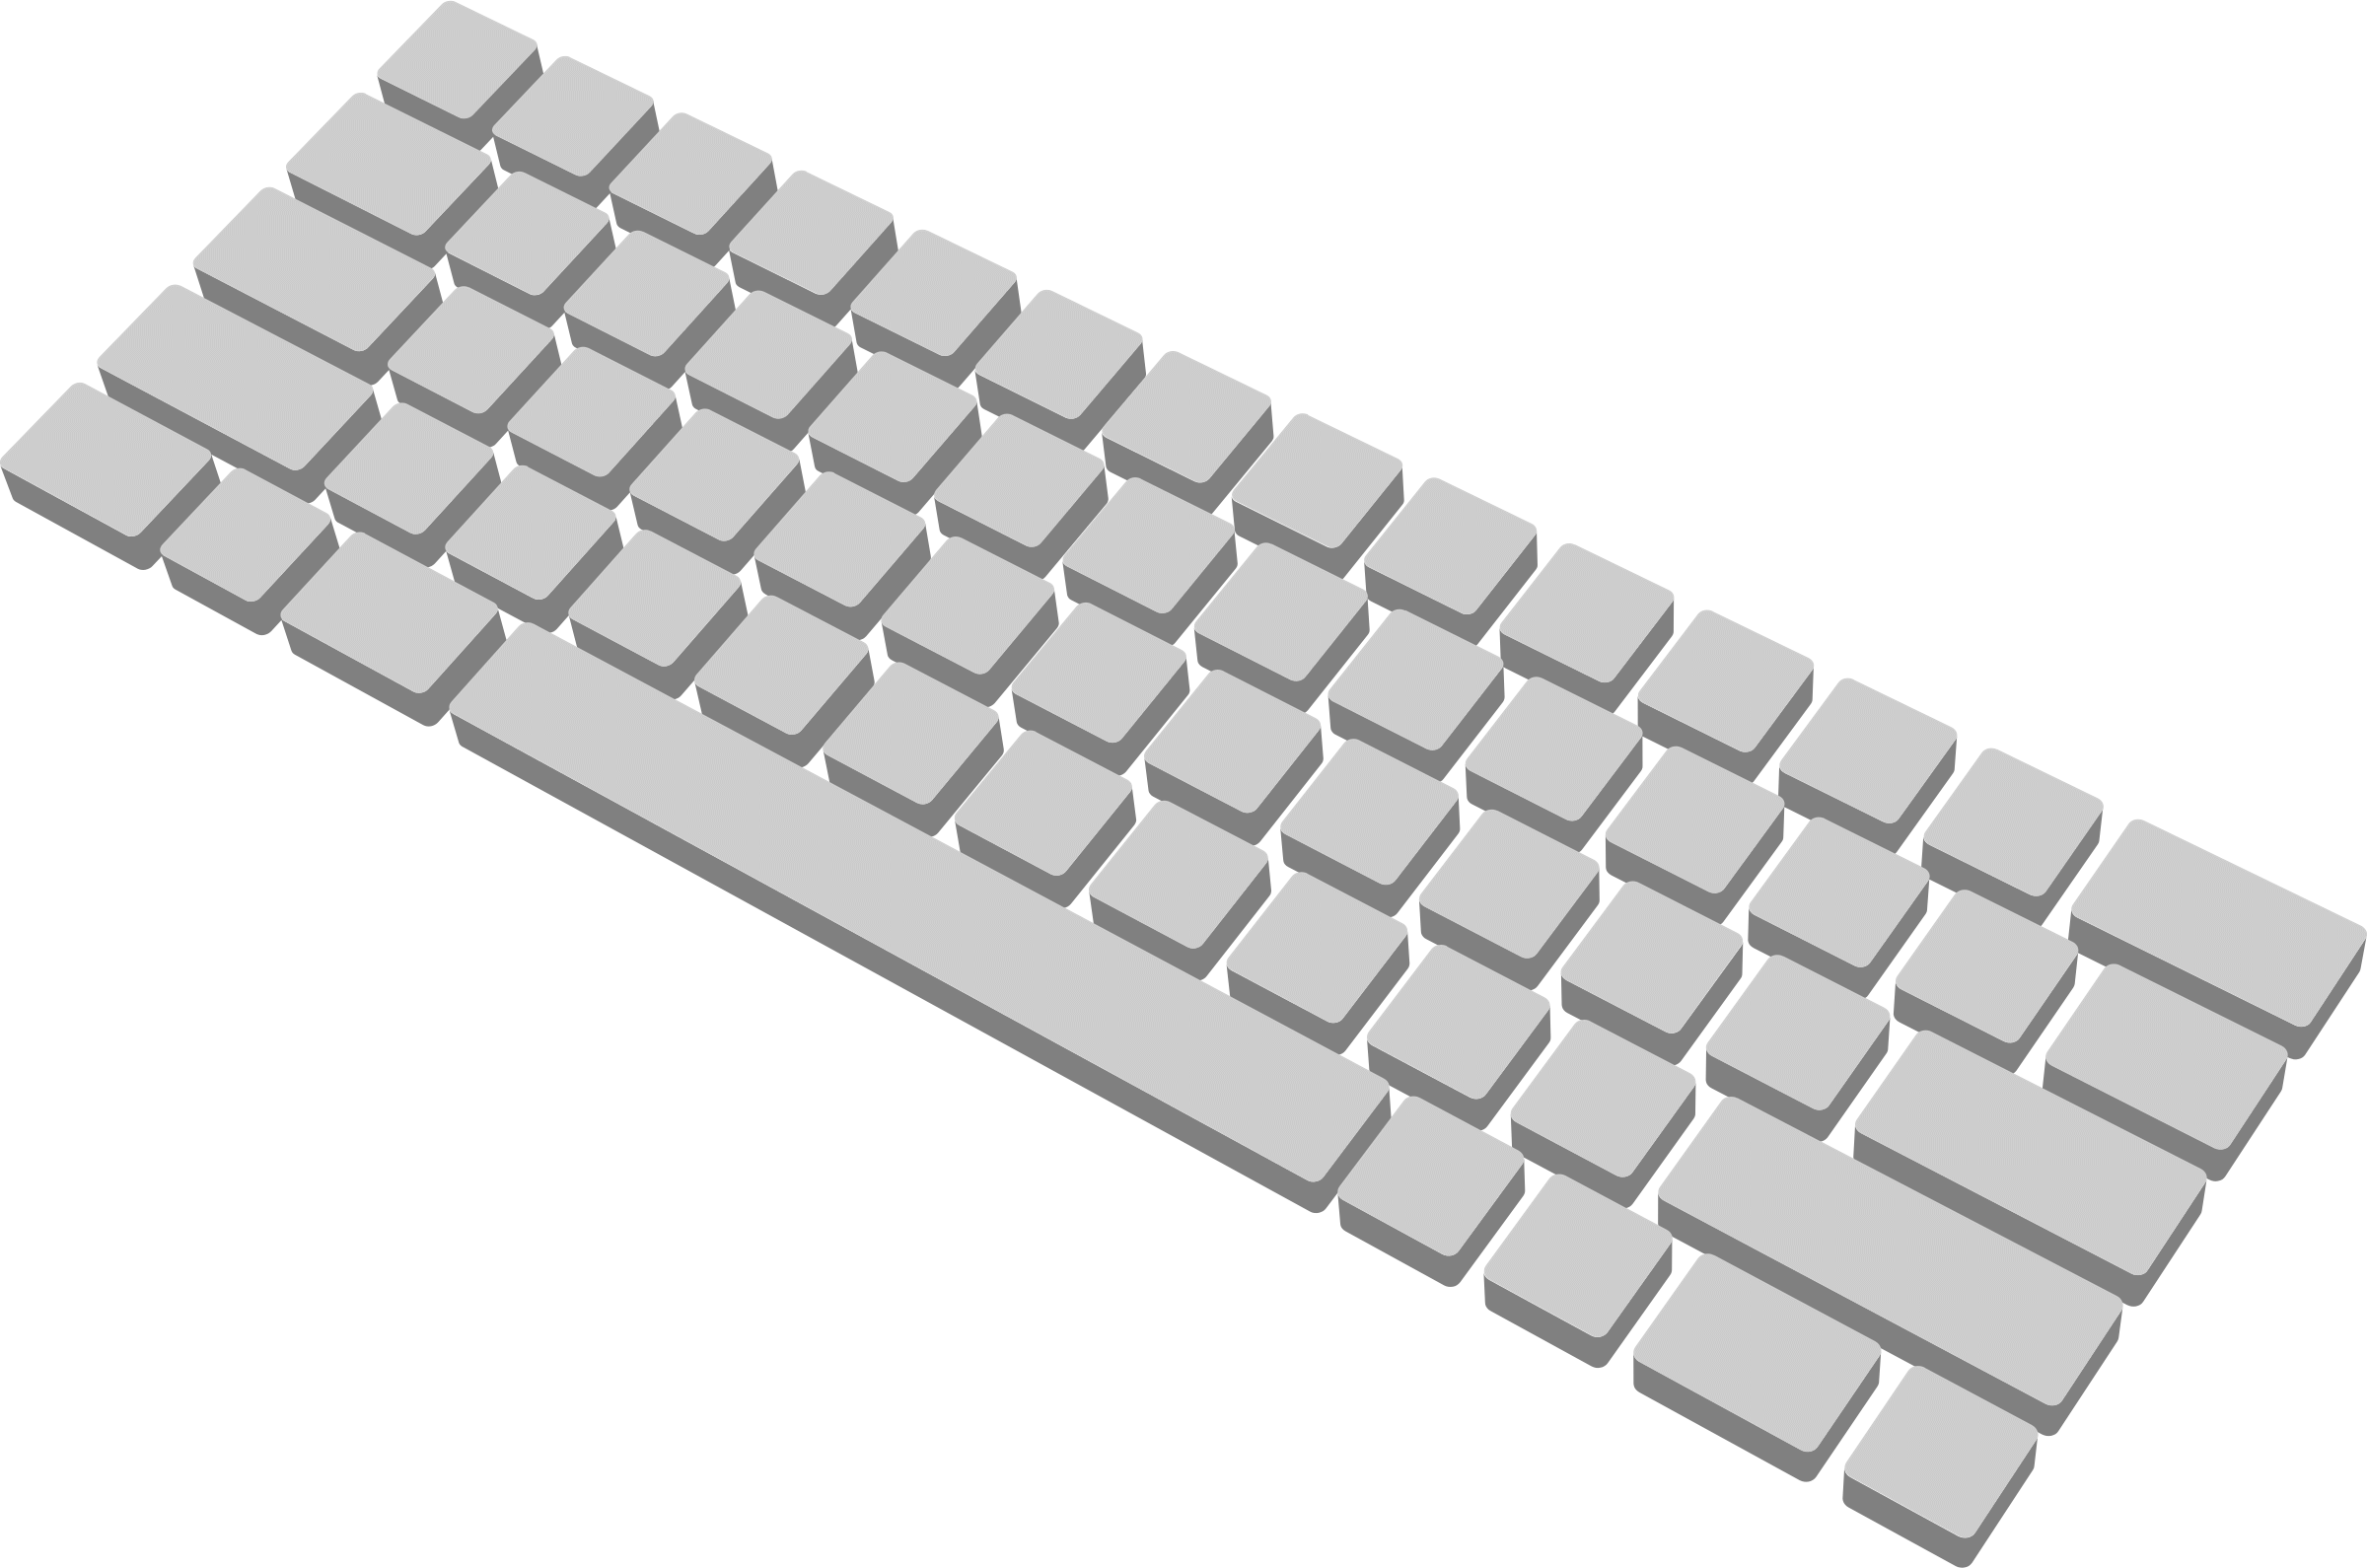 keyboard clipart 3d computer